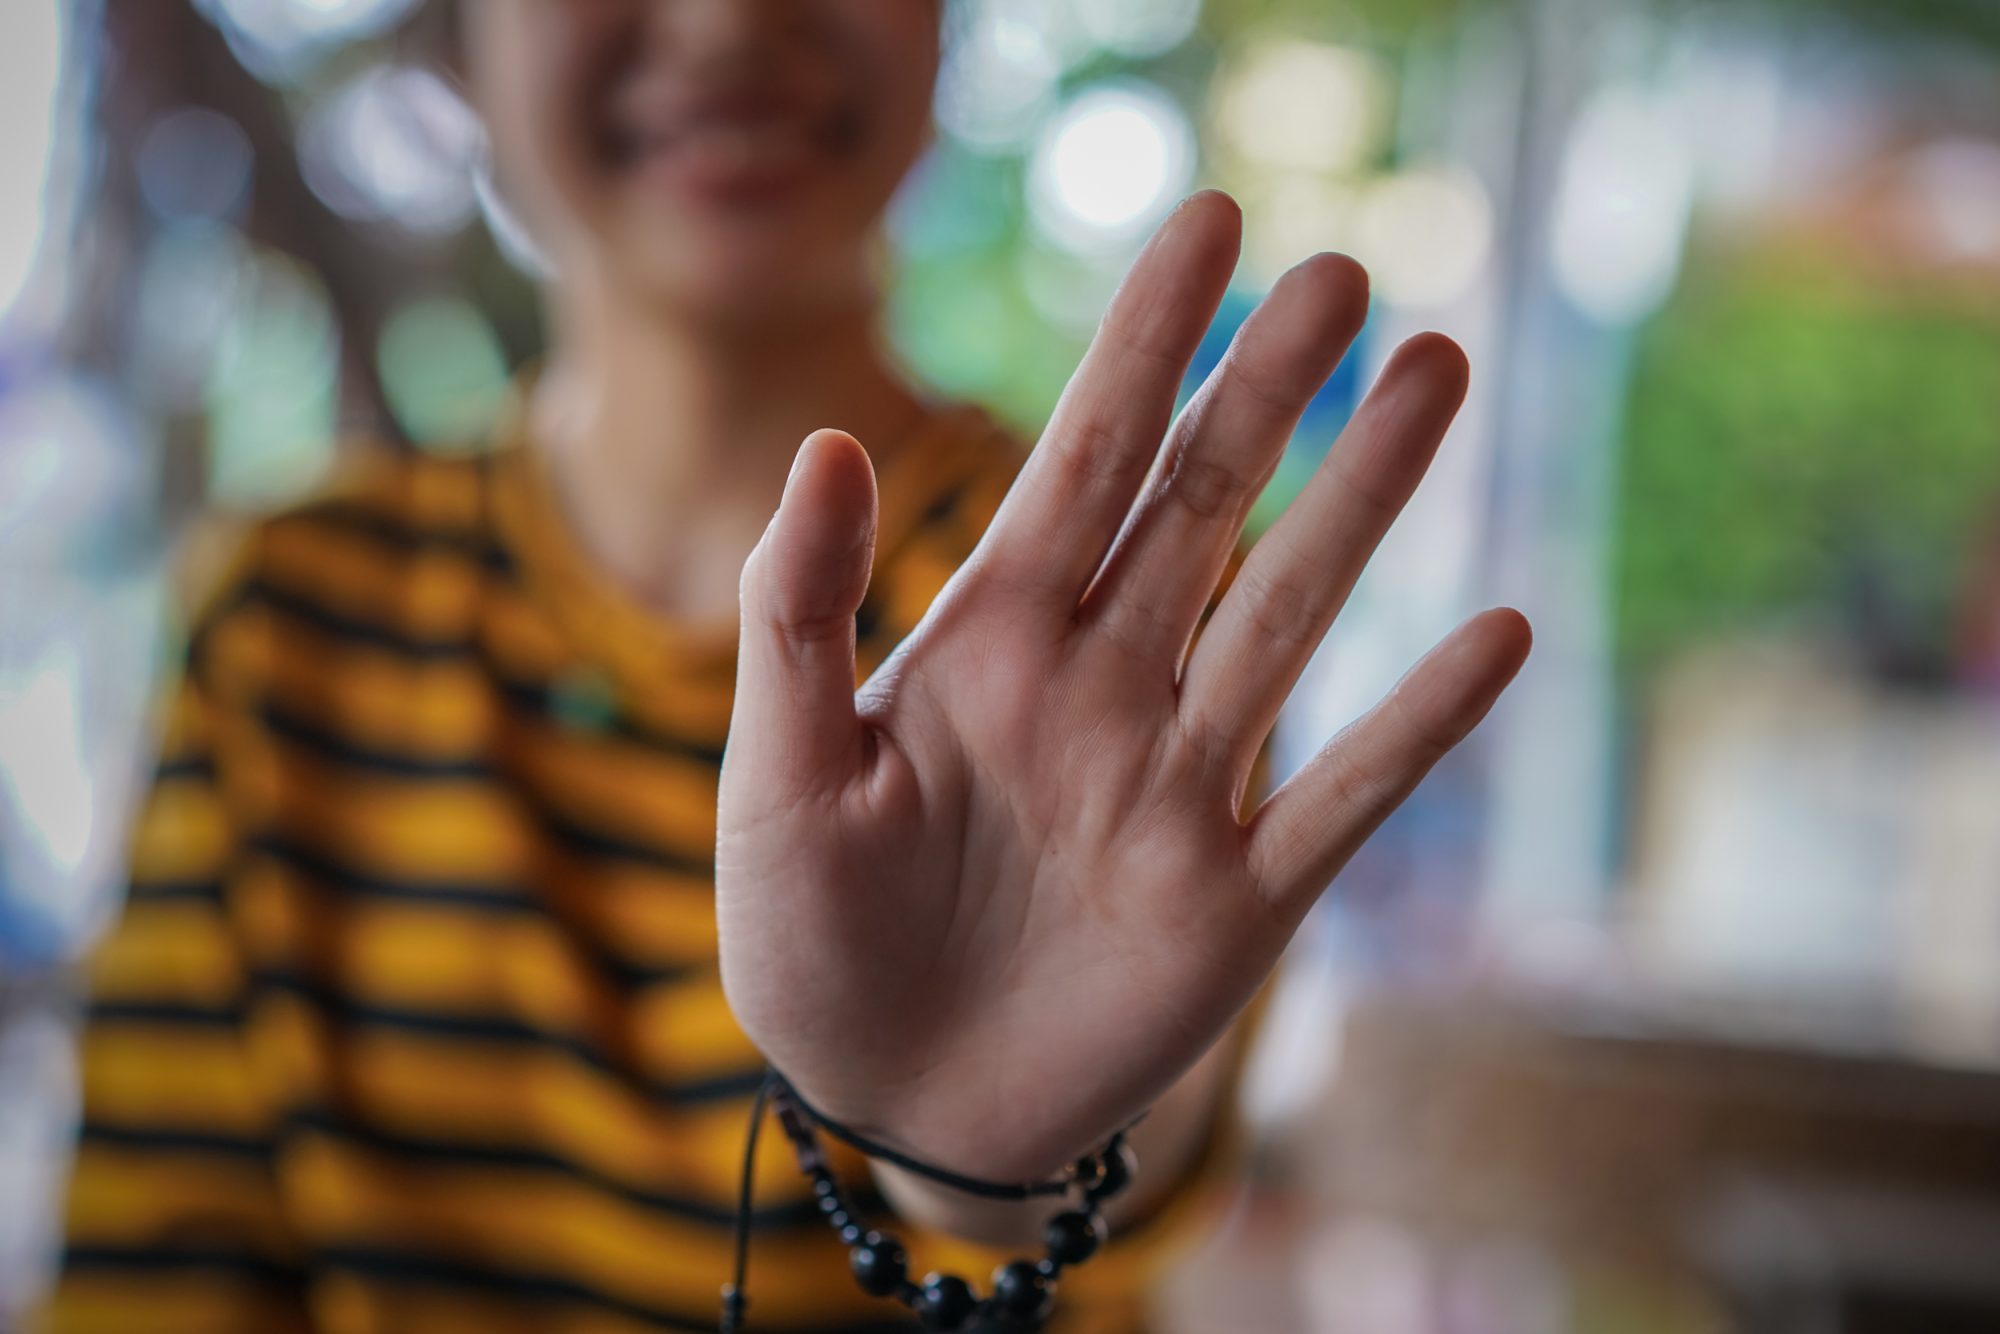 وكشف العلماء عن طريقة سهلة لتحديد الإنسان السيكوباتي في العالم الواقعي، إذا كان إصبع البنصر لديهم أطول من إصبع السبابة